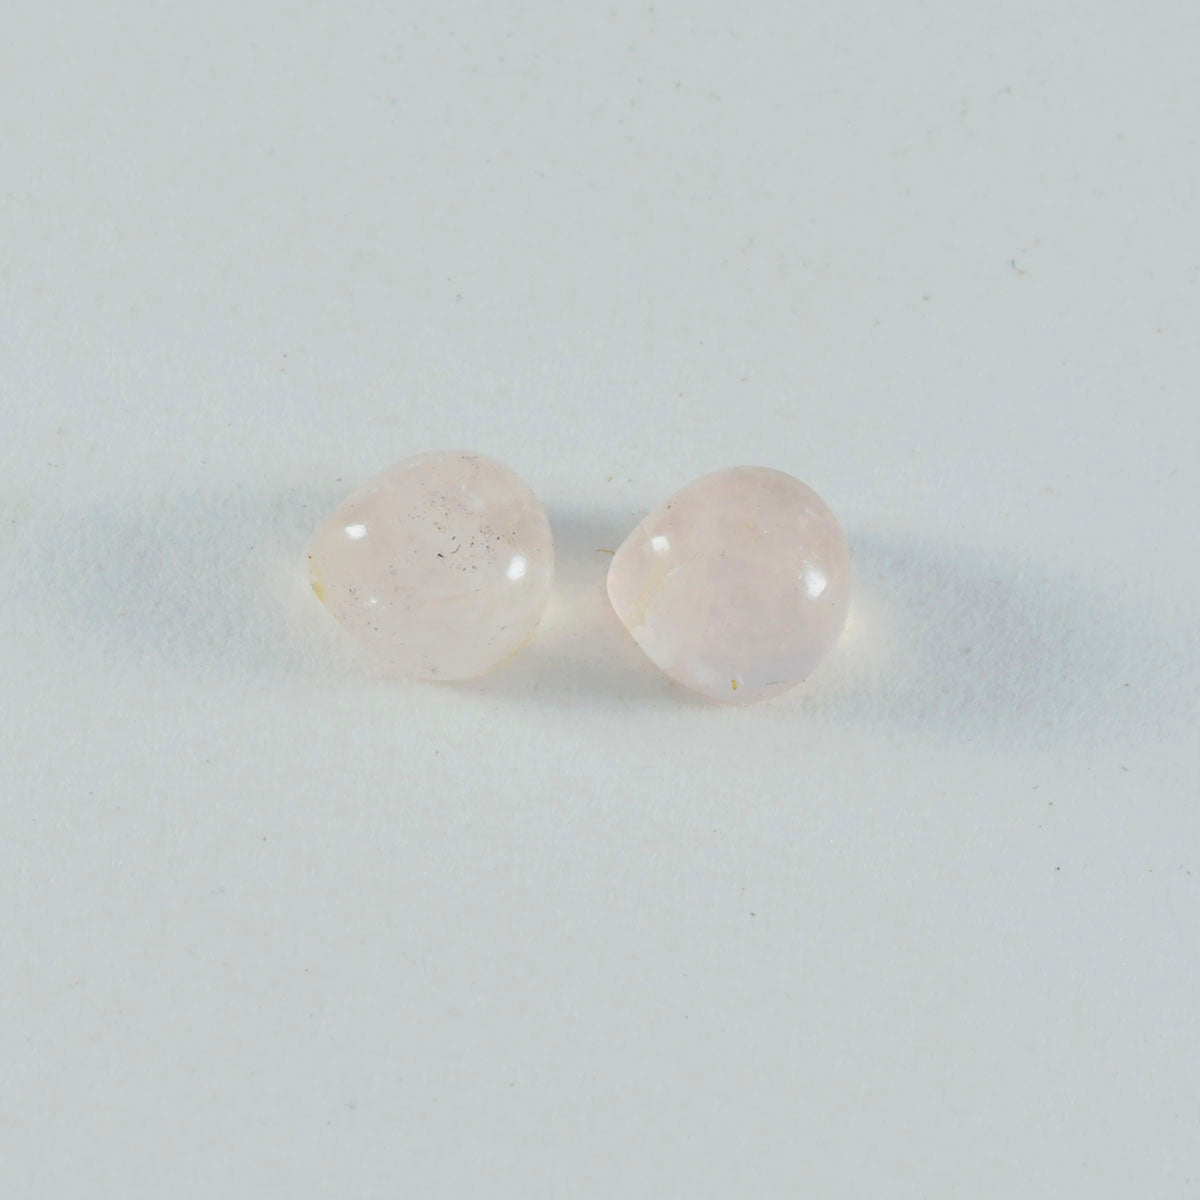 riyogems 1 шт., кабошон из розового кварца, 5x5 мм, в форме сердца, превосходное качество, свободный камень